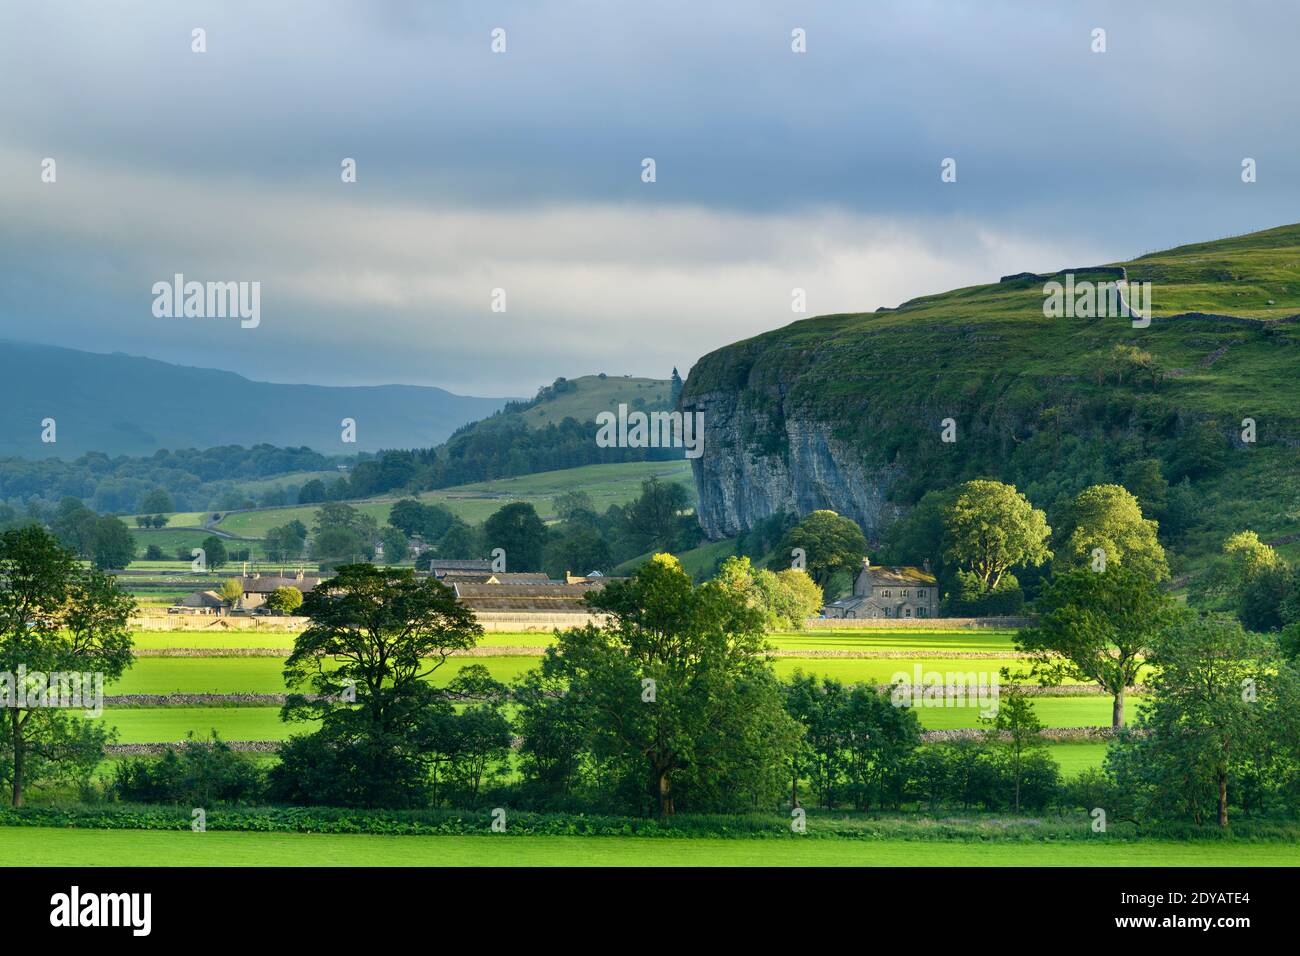 Pittoresque Wharfe Valley (champs éclairés au soleil, murs en pierre, Kilnsey Crag - haute falaise calcaire, collines) - Wharfedale, Yorkshire Dales, Angleterre, Royaume-Uni. Banque D'Images